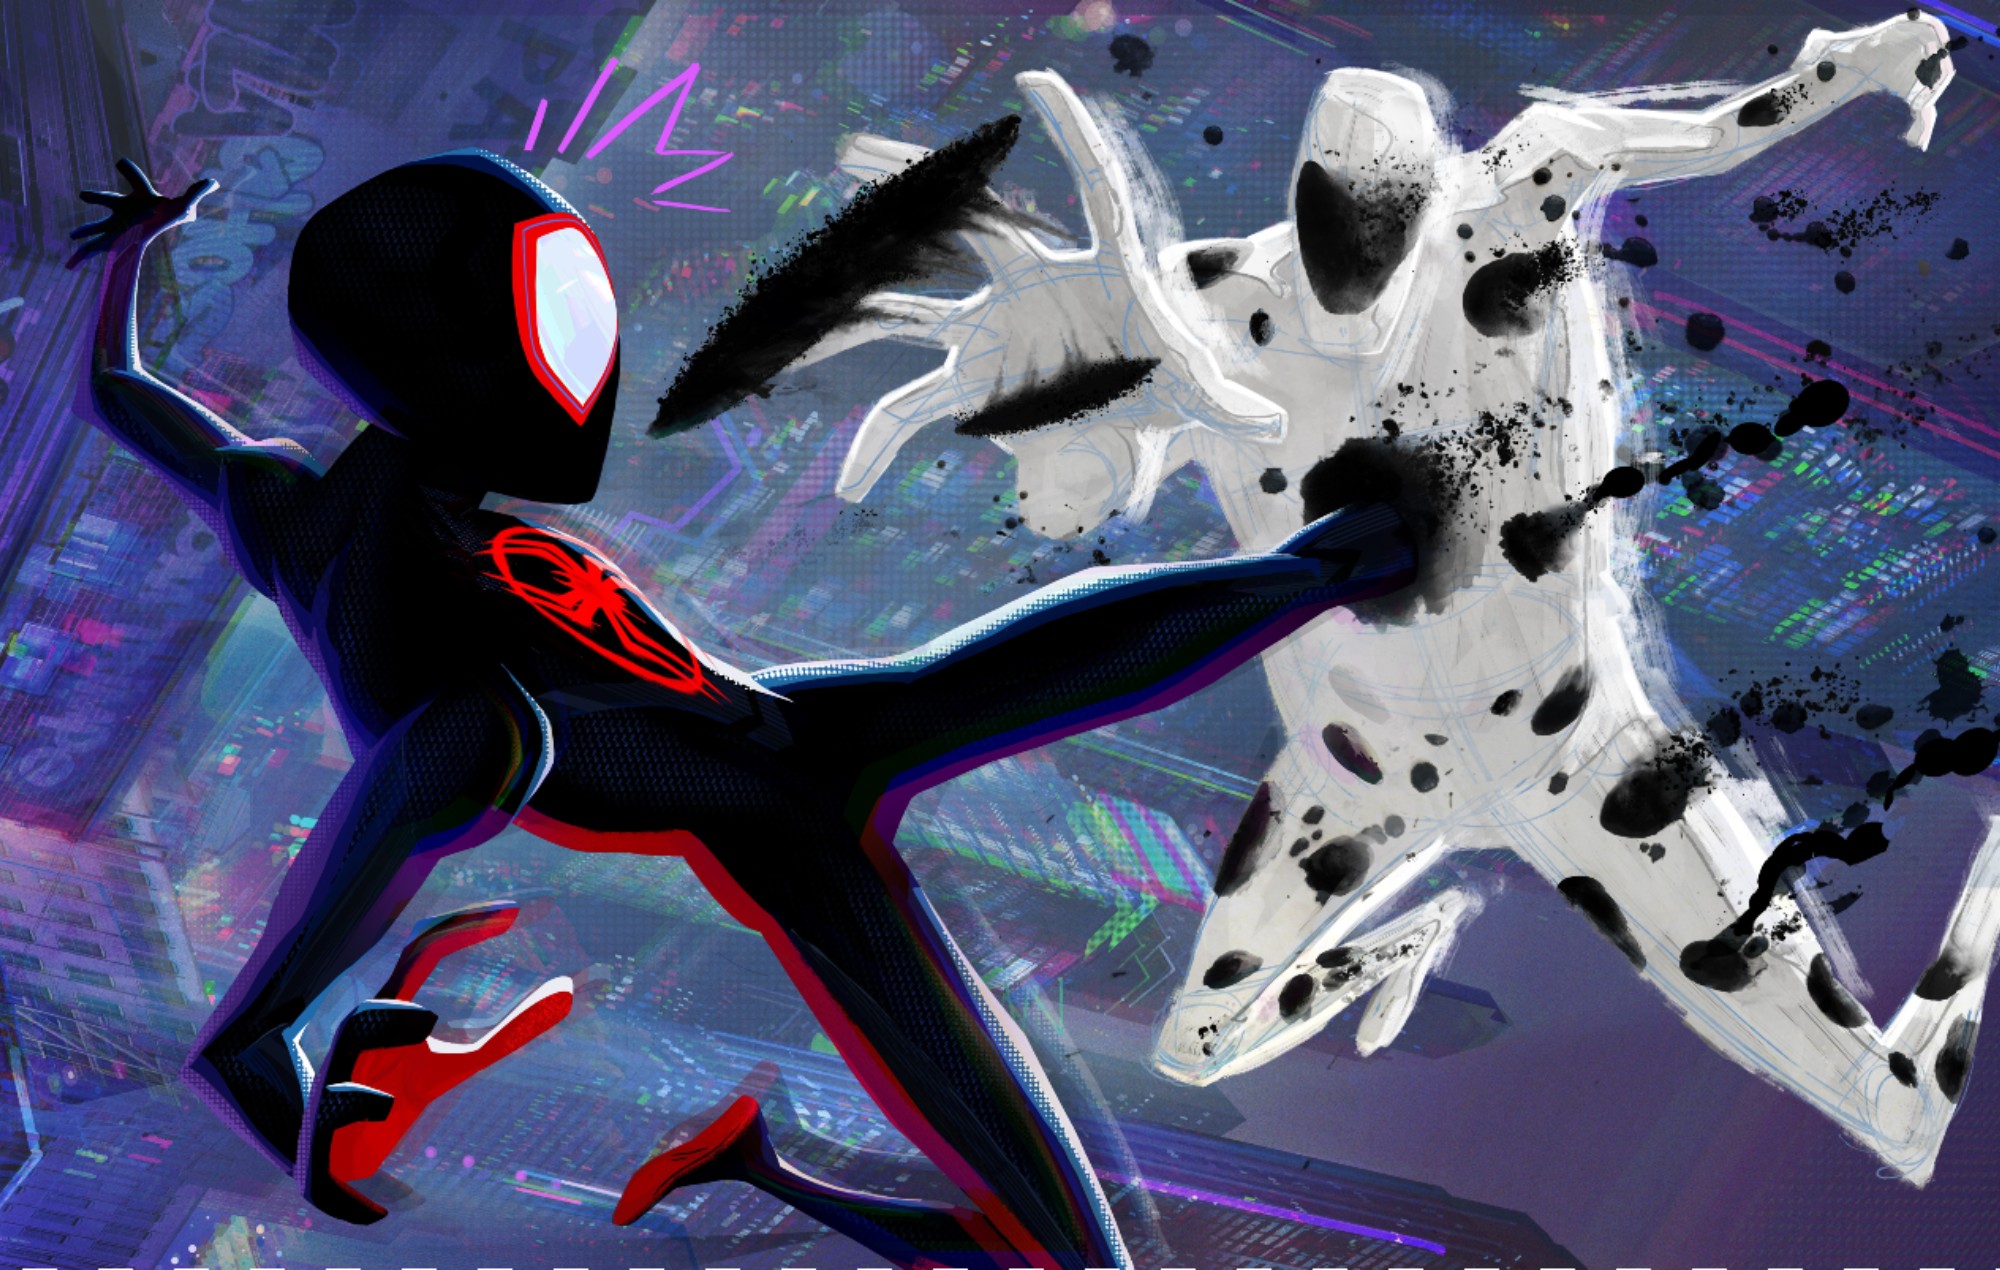 ¿Quién interpreta a Spider-Man en "Across The Spider-Verse"?